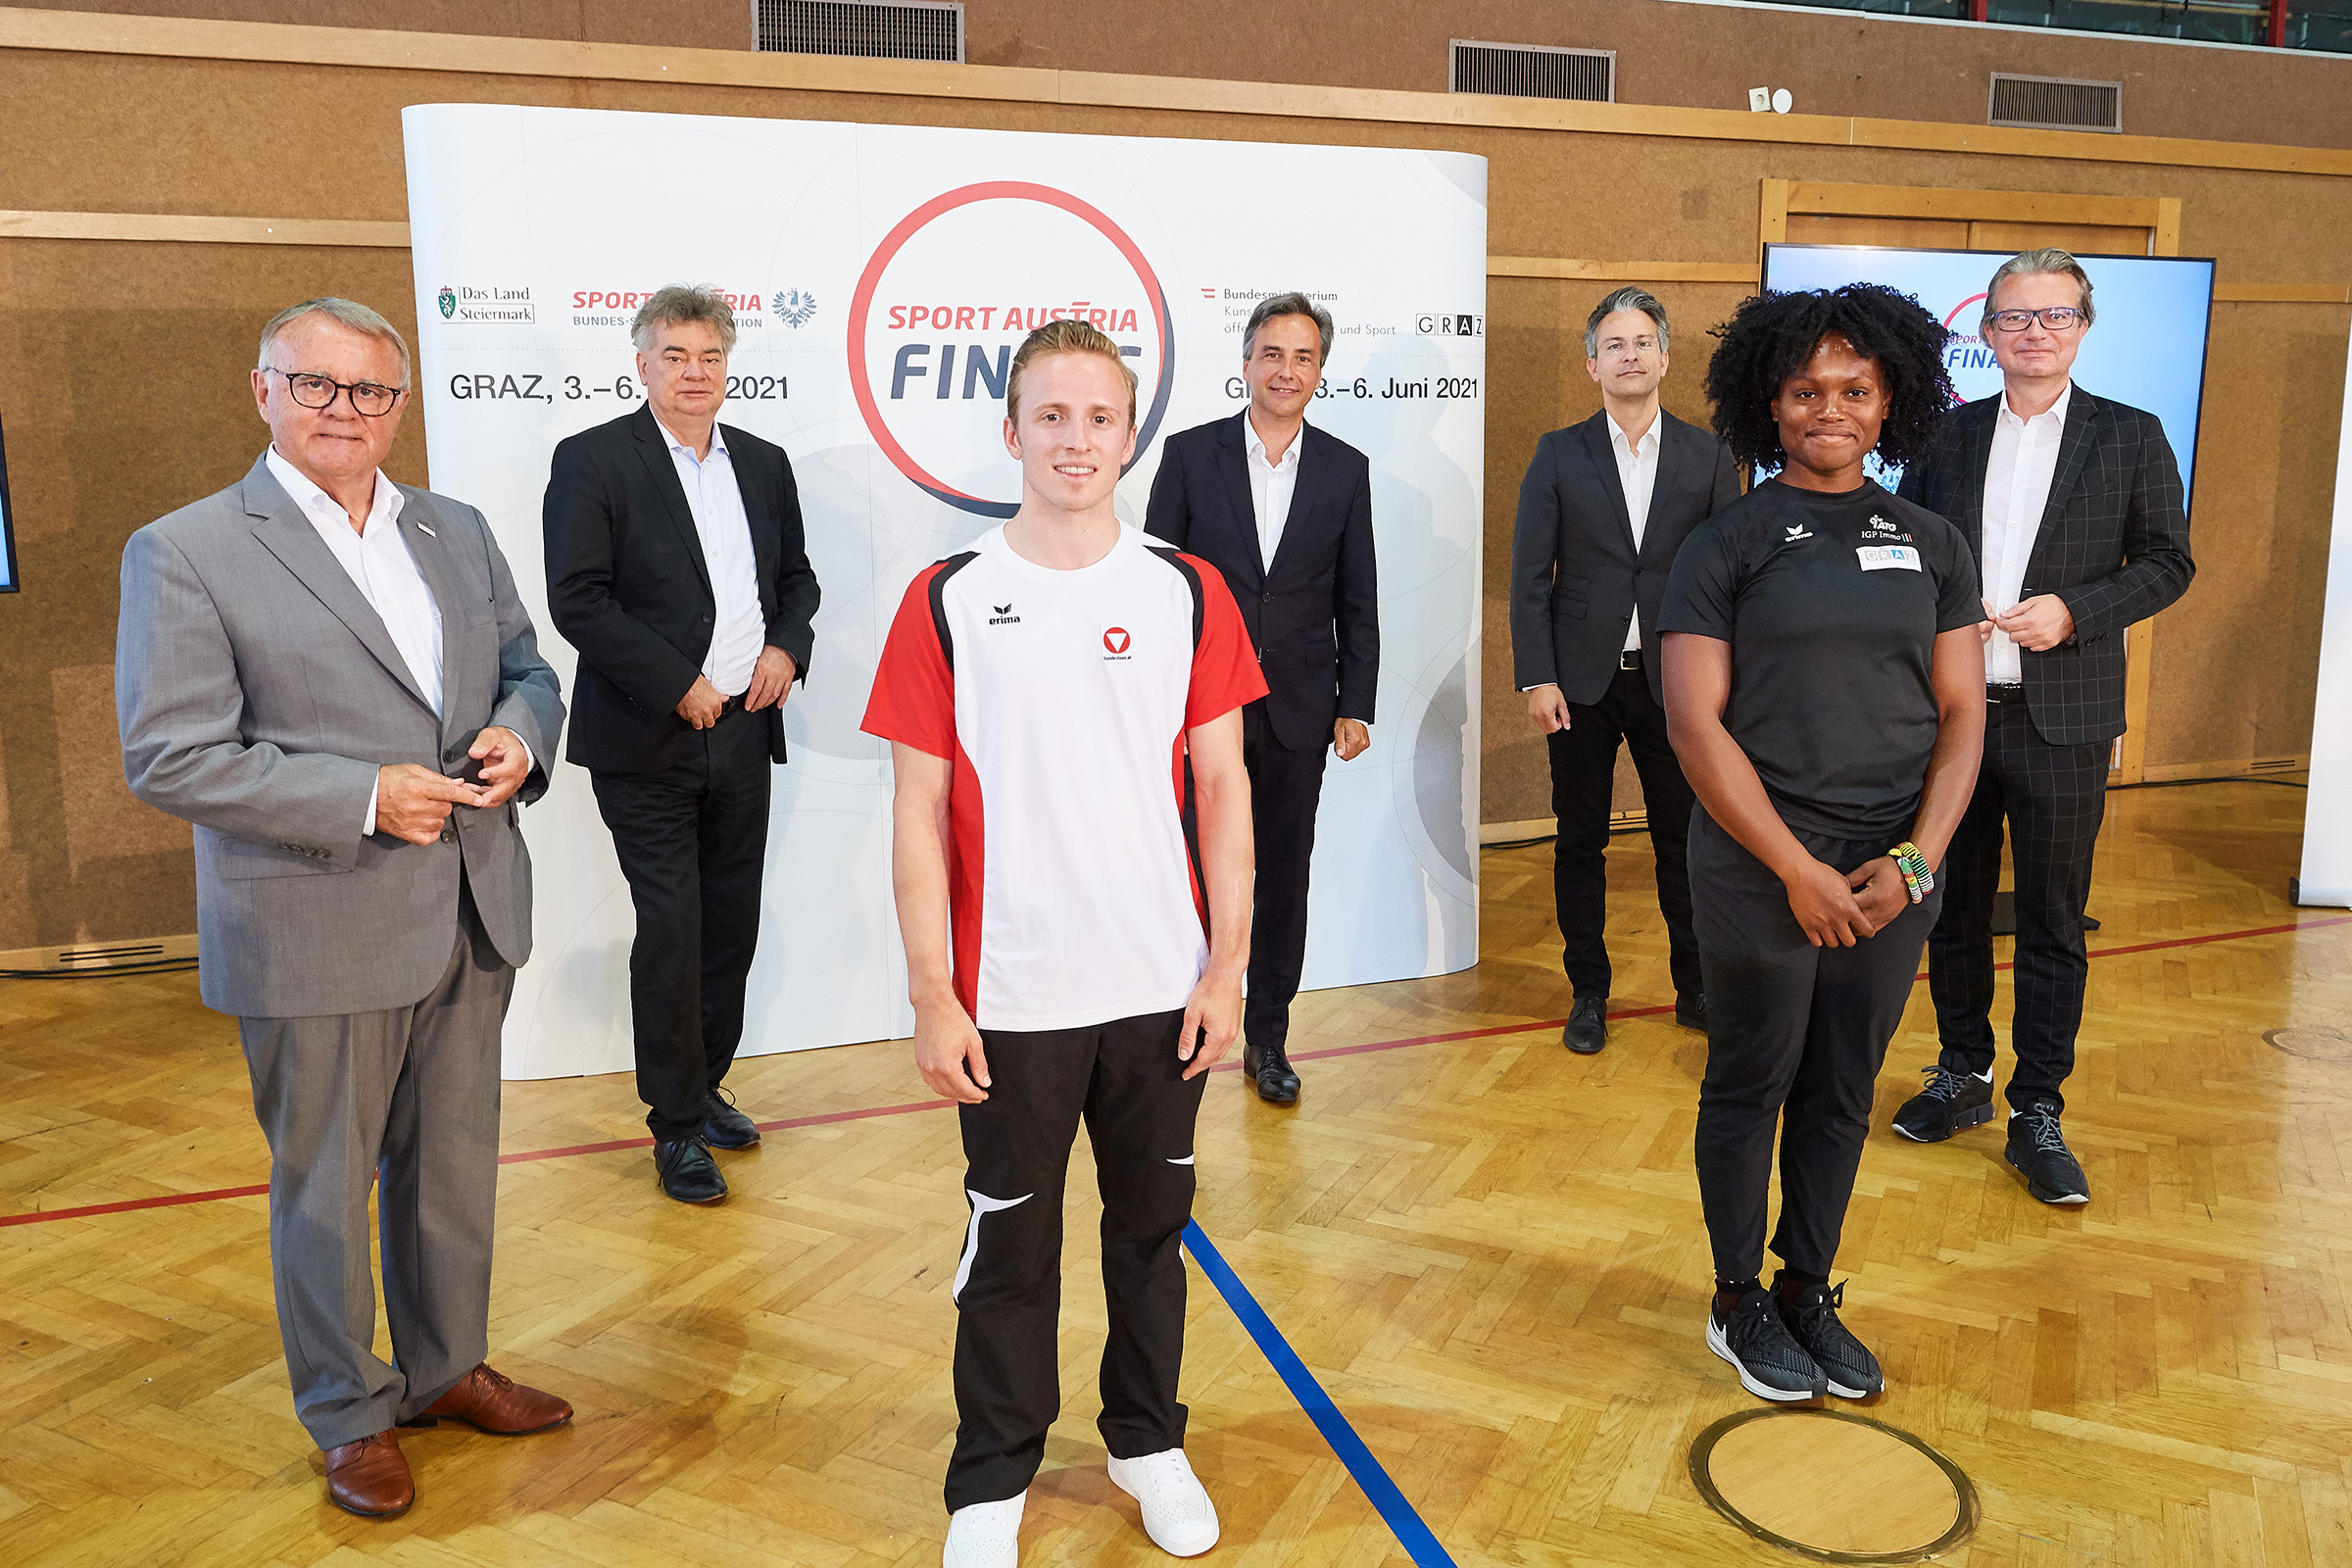 Bund, Land und Stadt freuen sich auf die Premiere der Sport Austria Finals 2021 in Graz.